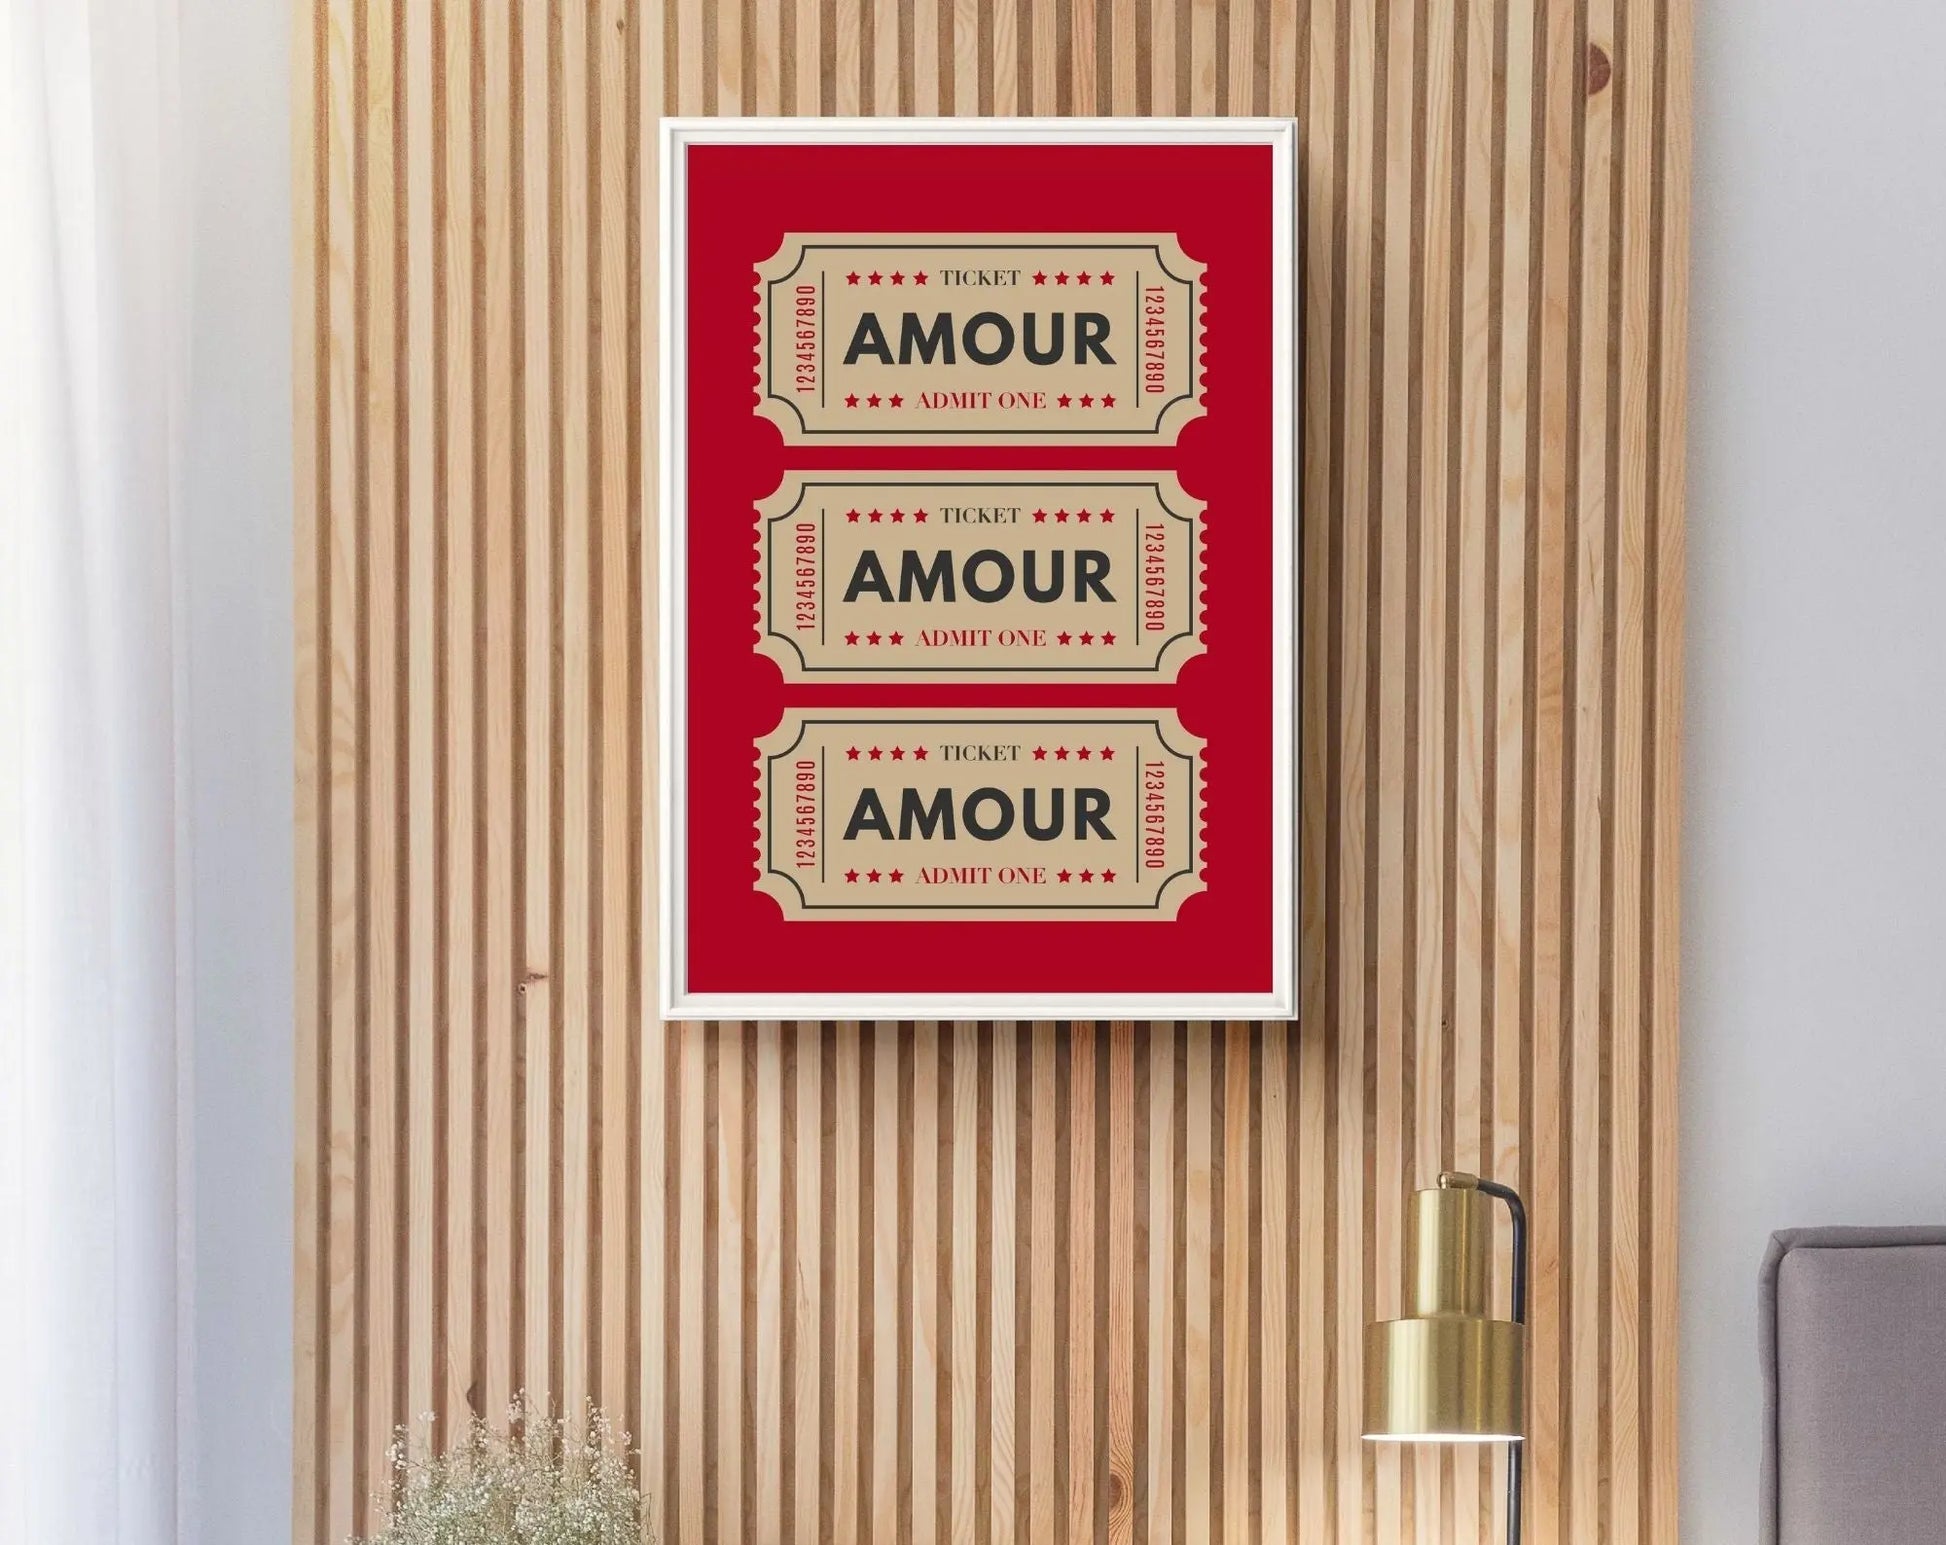 Amour ticket couleur rouge Affiche - Affiche Saint-Valentin - FLTMfrance